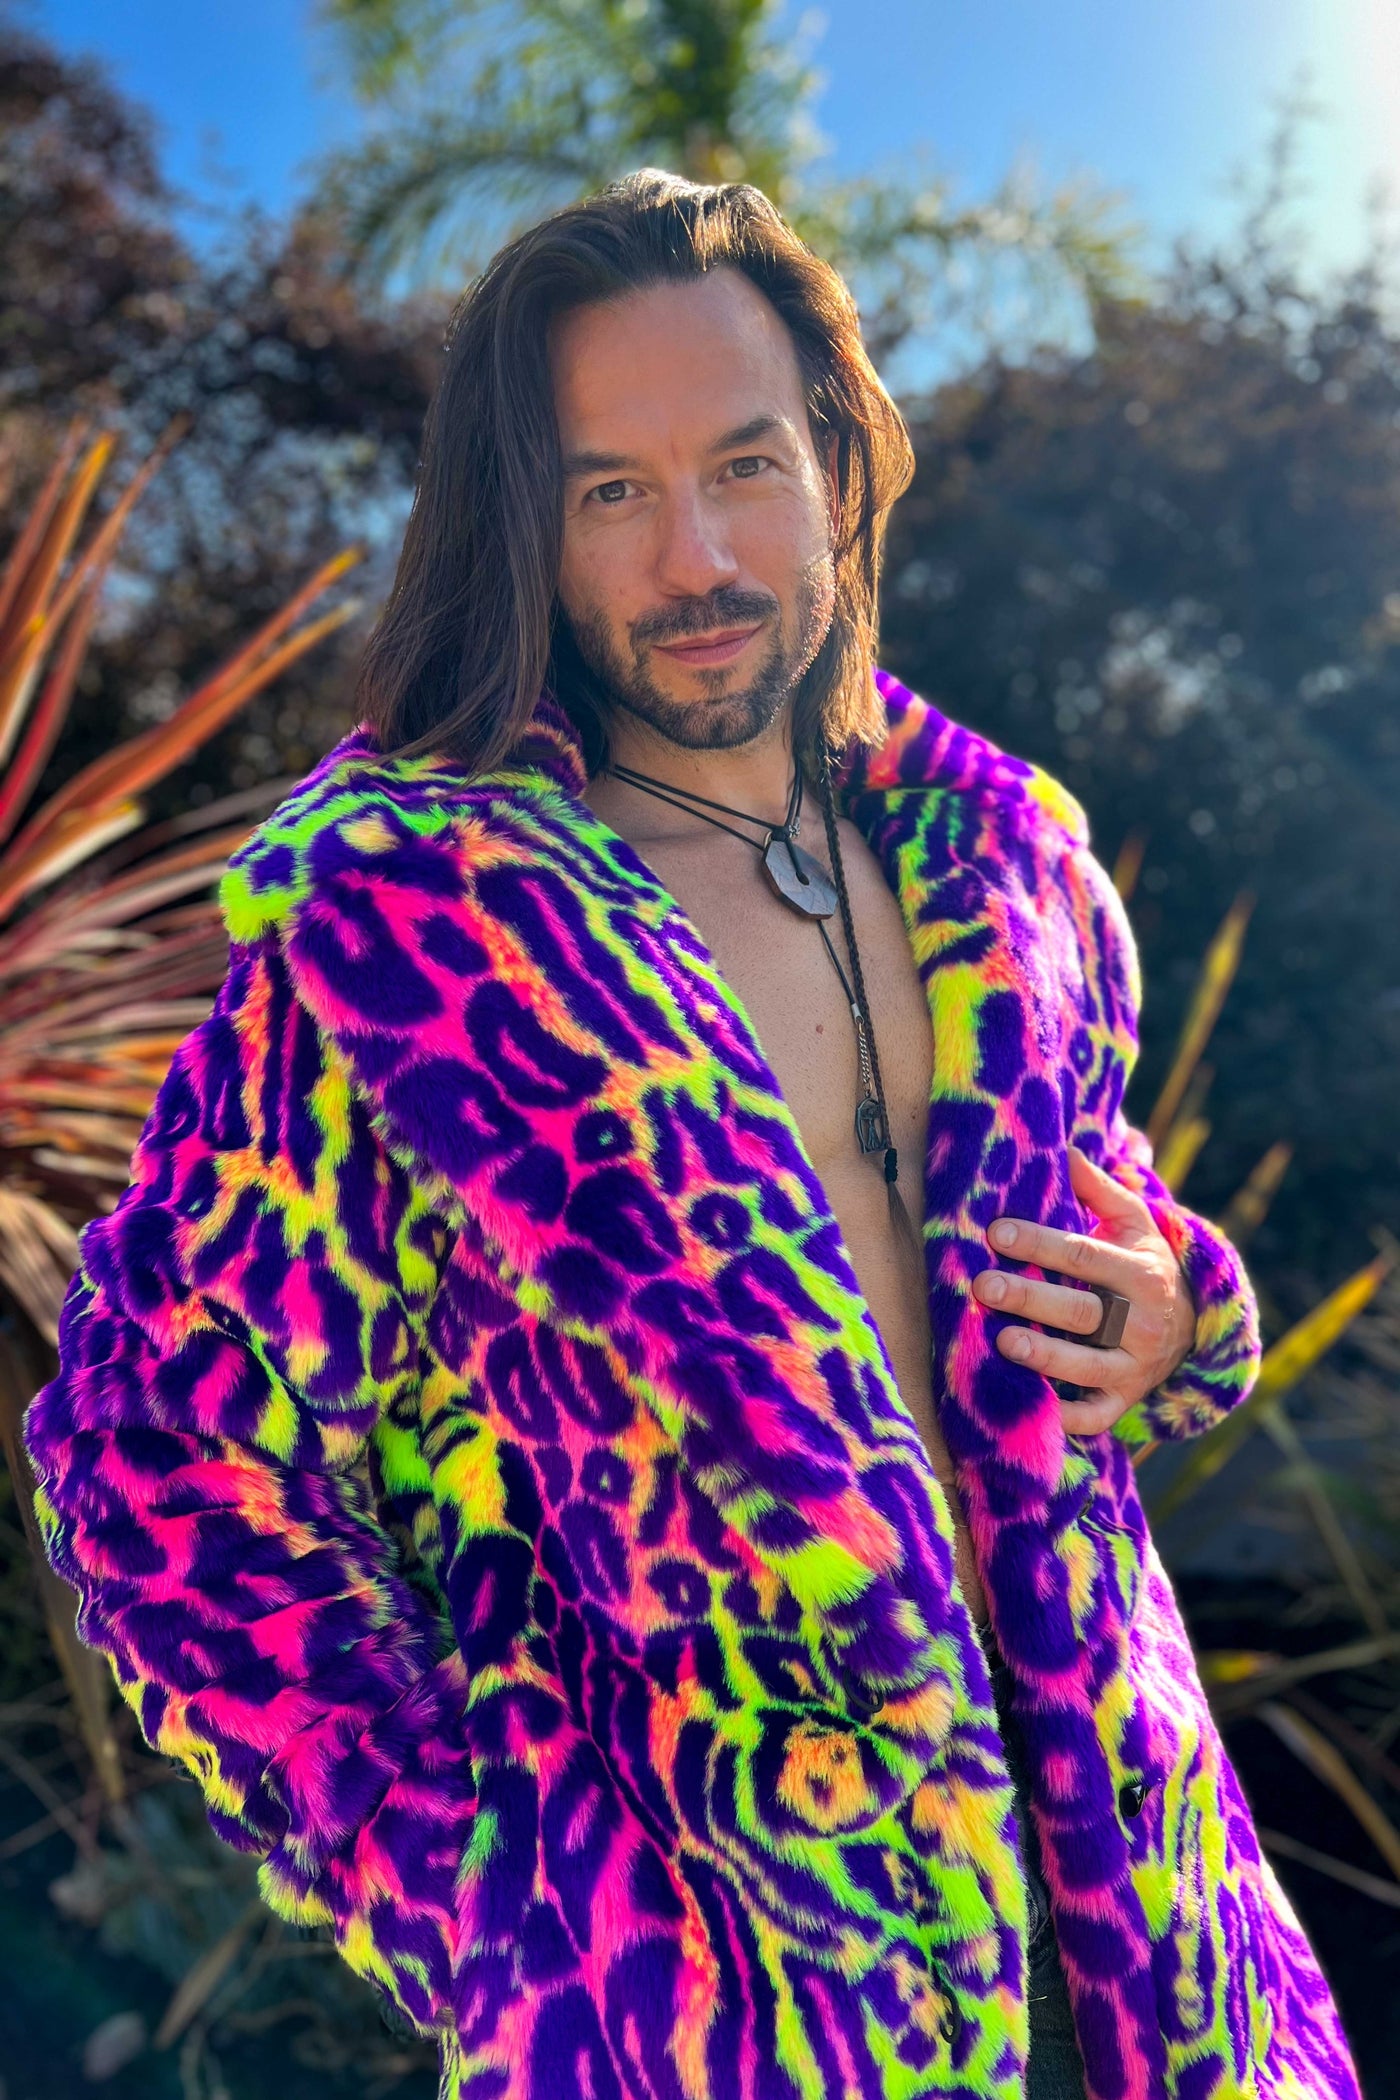 Men's Dutch Coat in "Neon Cheetah"